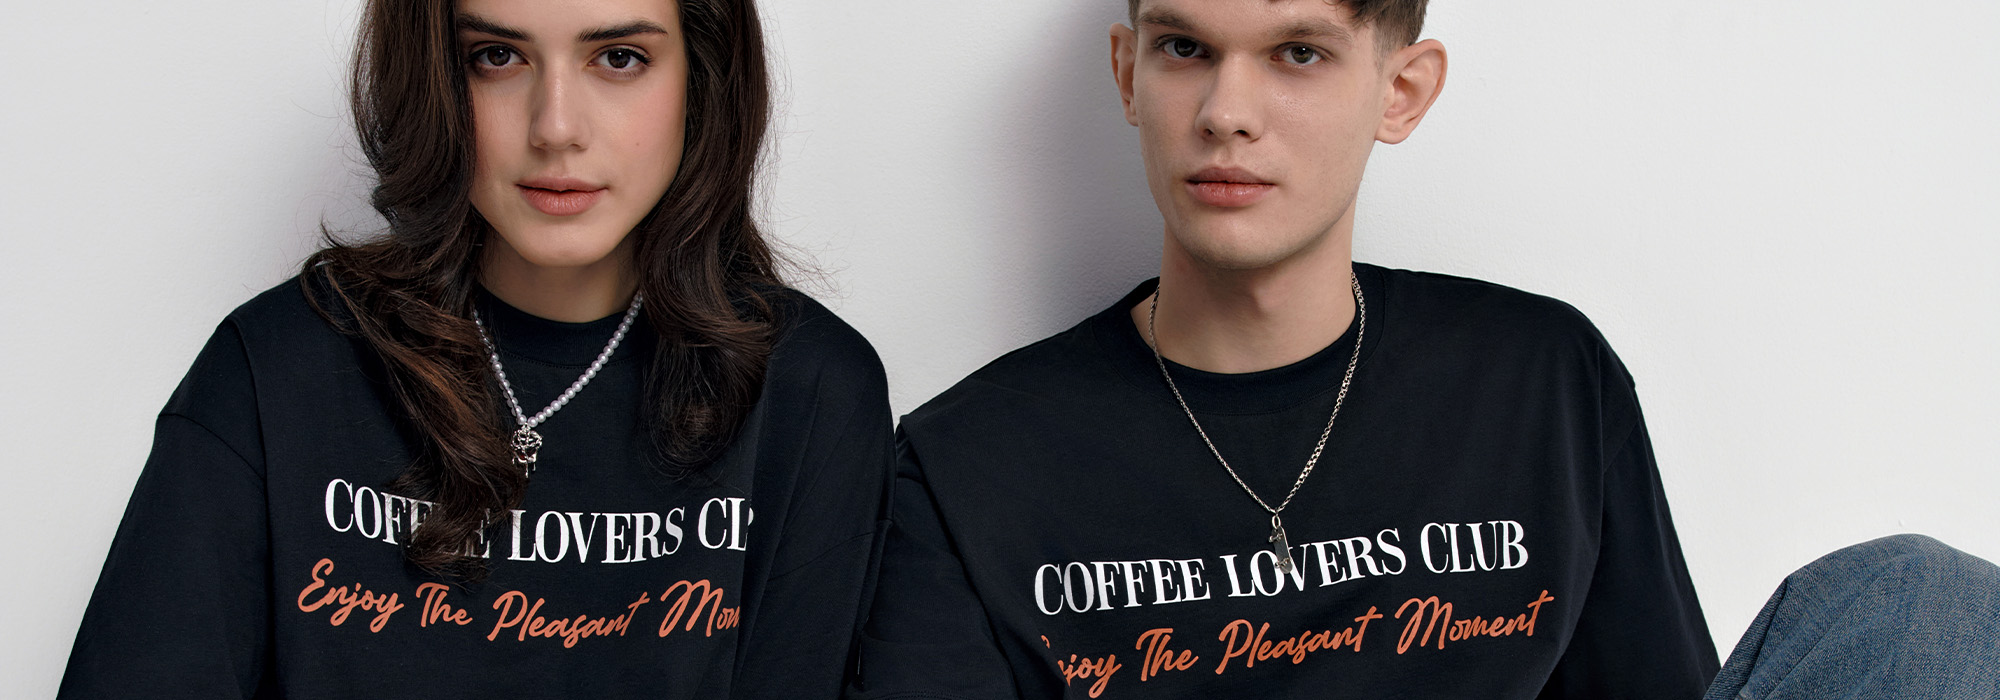 Conte и Cofix создали клуб любителей кофе